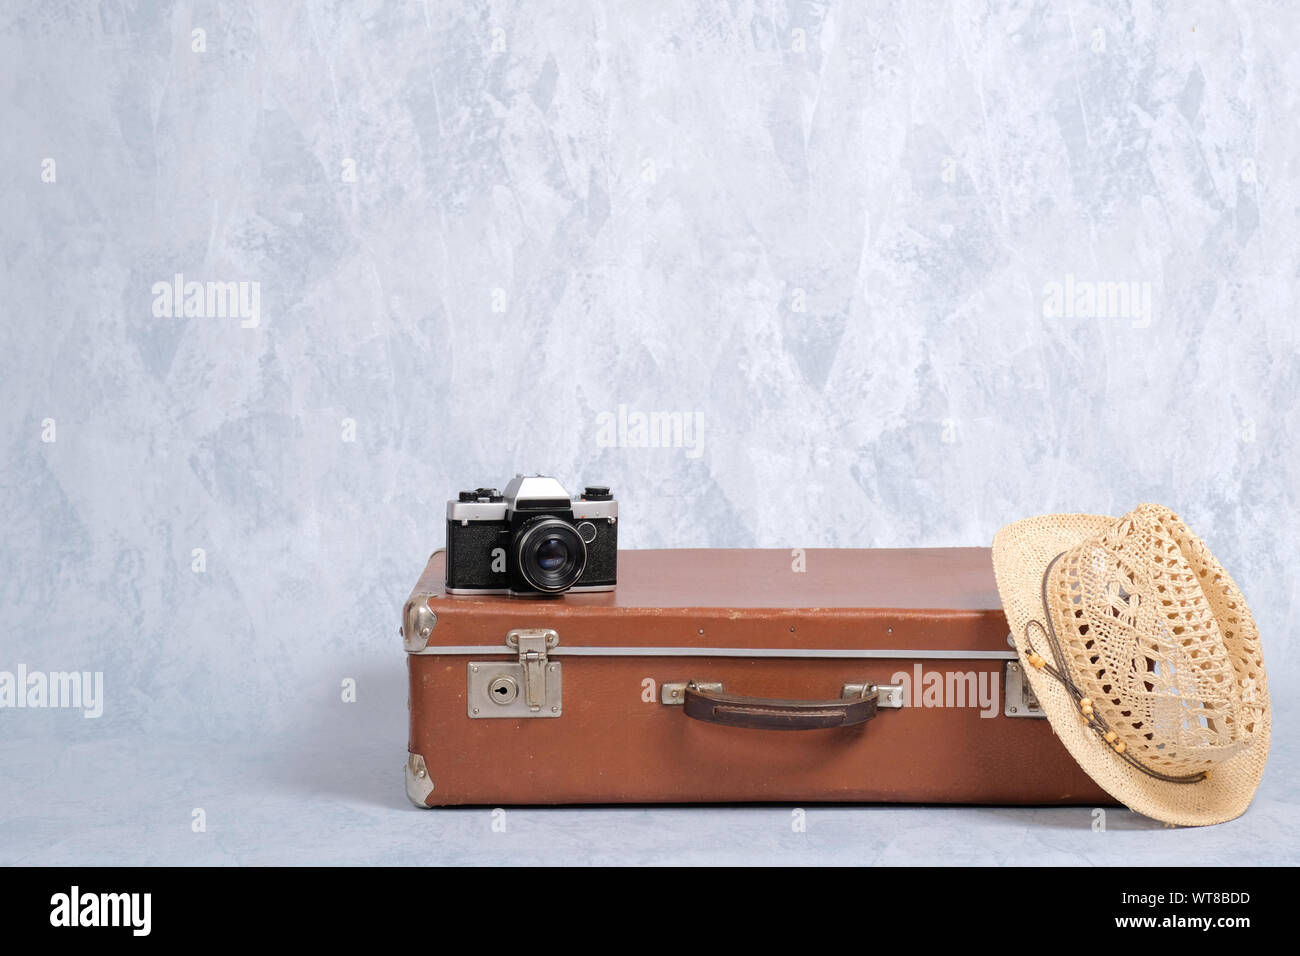 Viaggiare bagaglio a mano vecchia valigia, cappello di paglia, fotocamera a pellicola su sfondo grigio. Concetto di viaggiare con riporto su bagagli, elegante travel, j Foto Stock